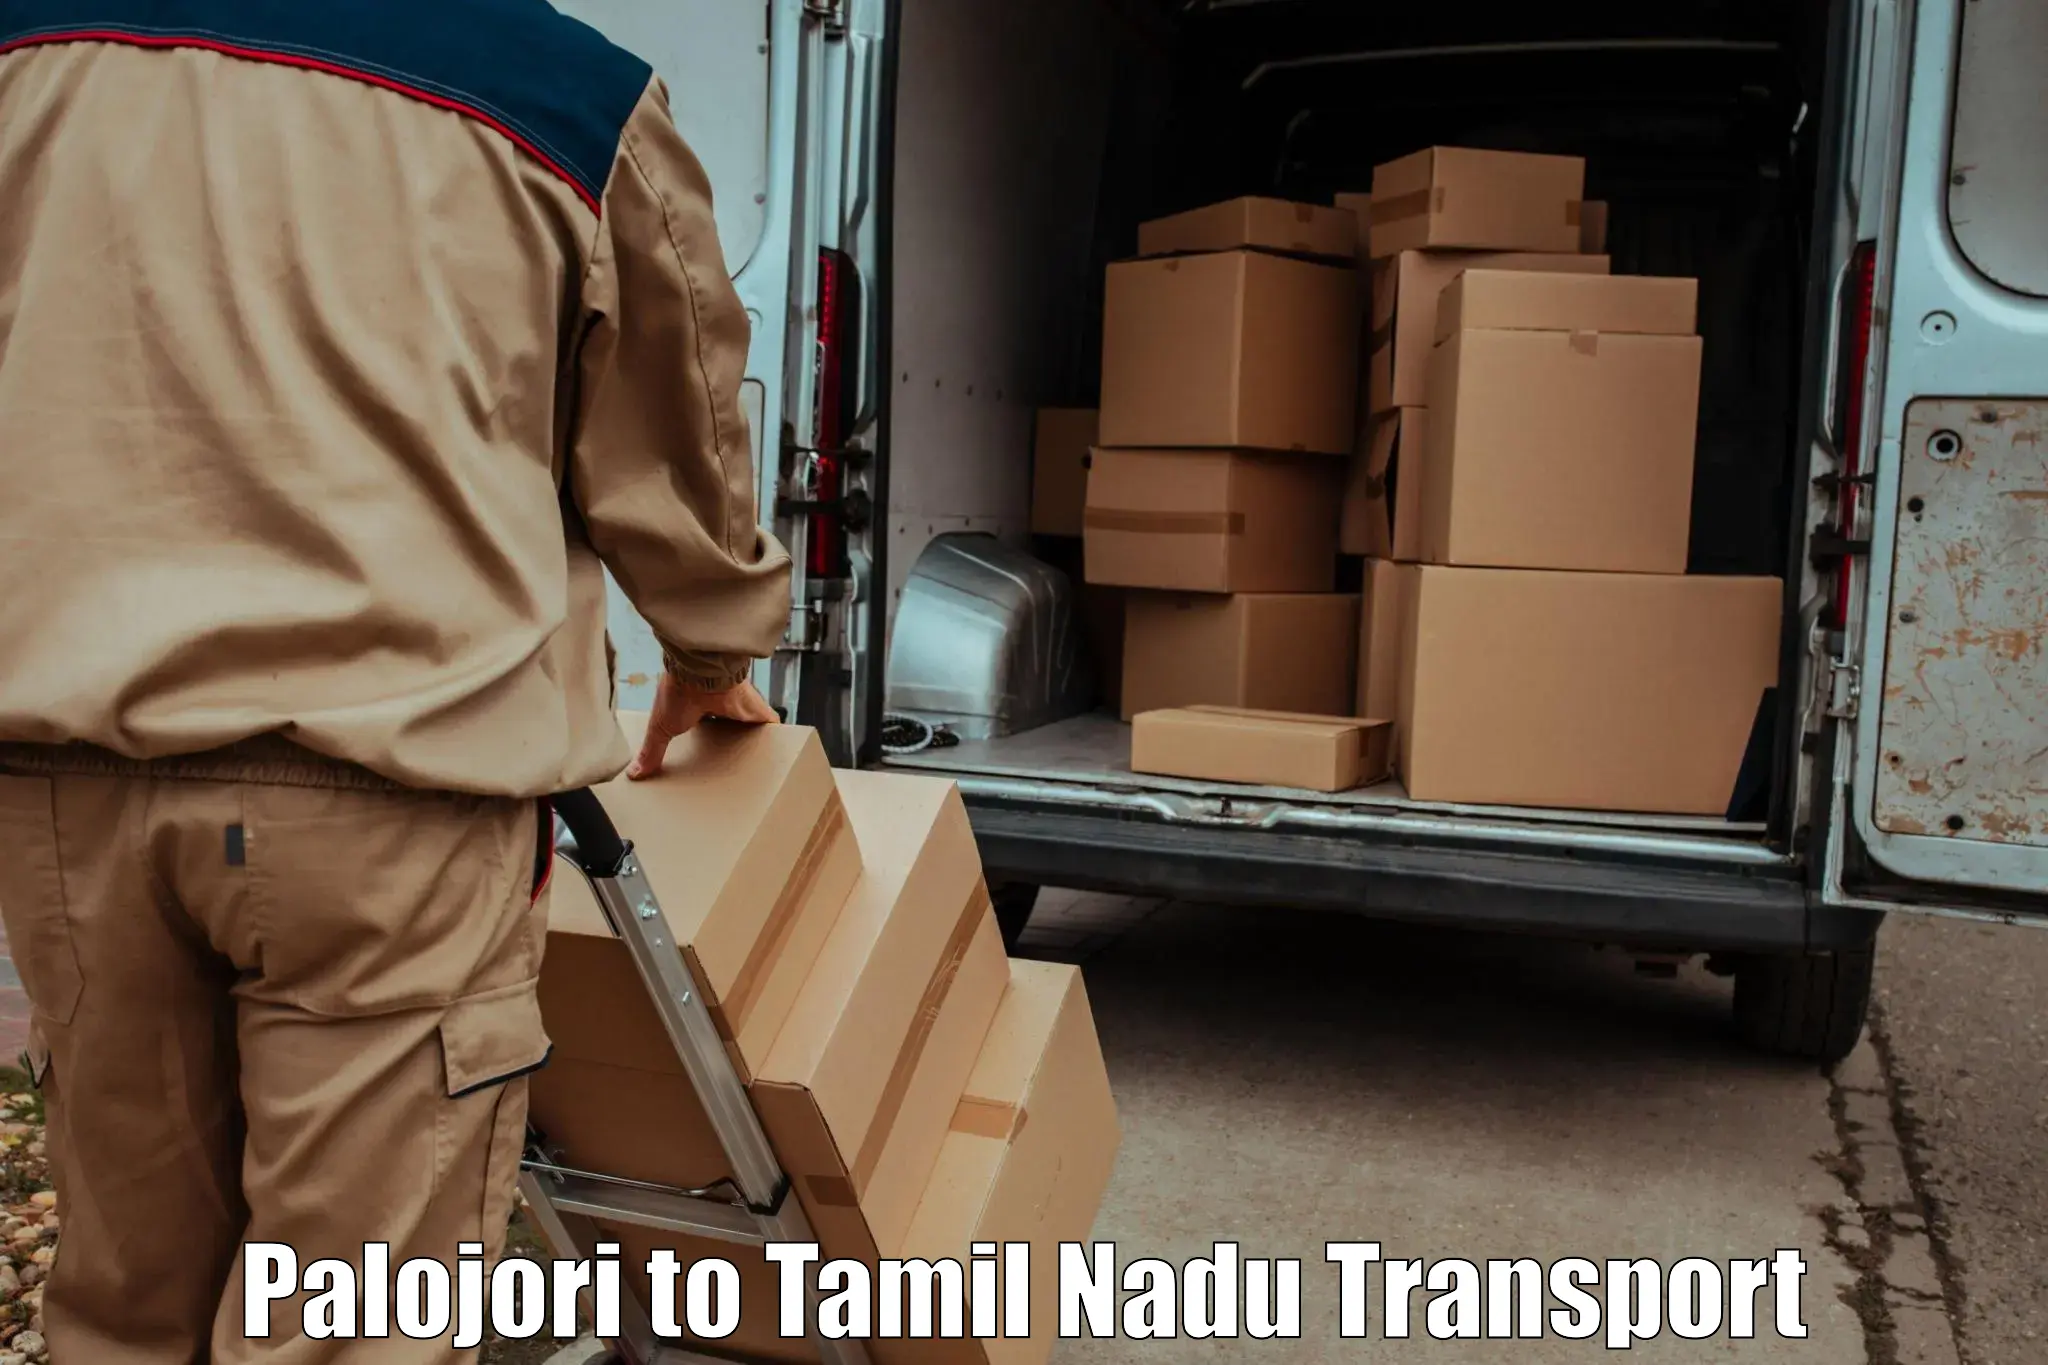 Container transport service Palojori to Padi